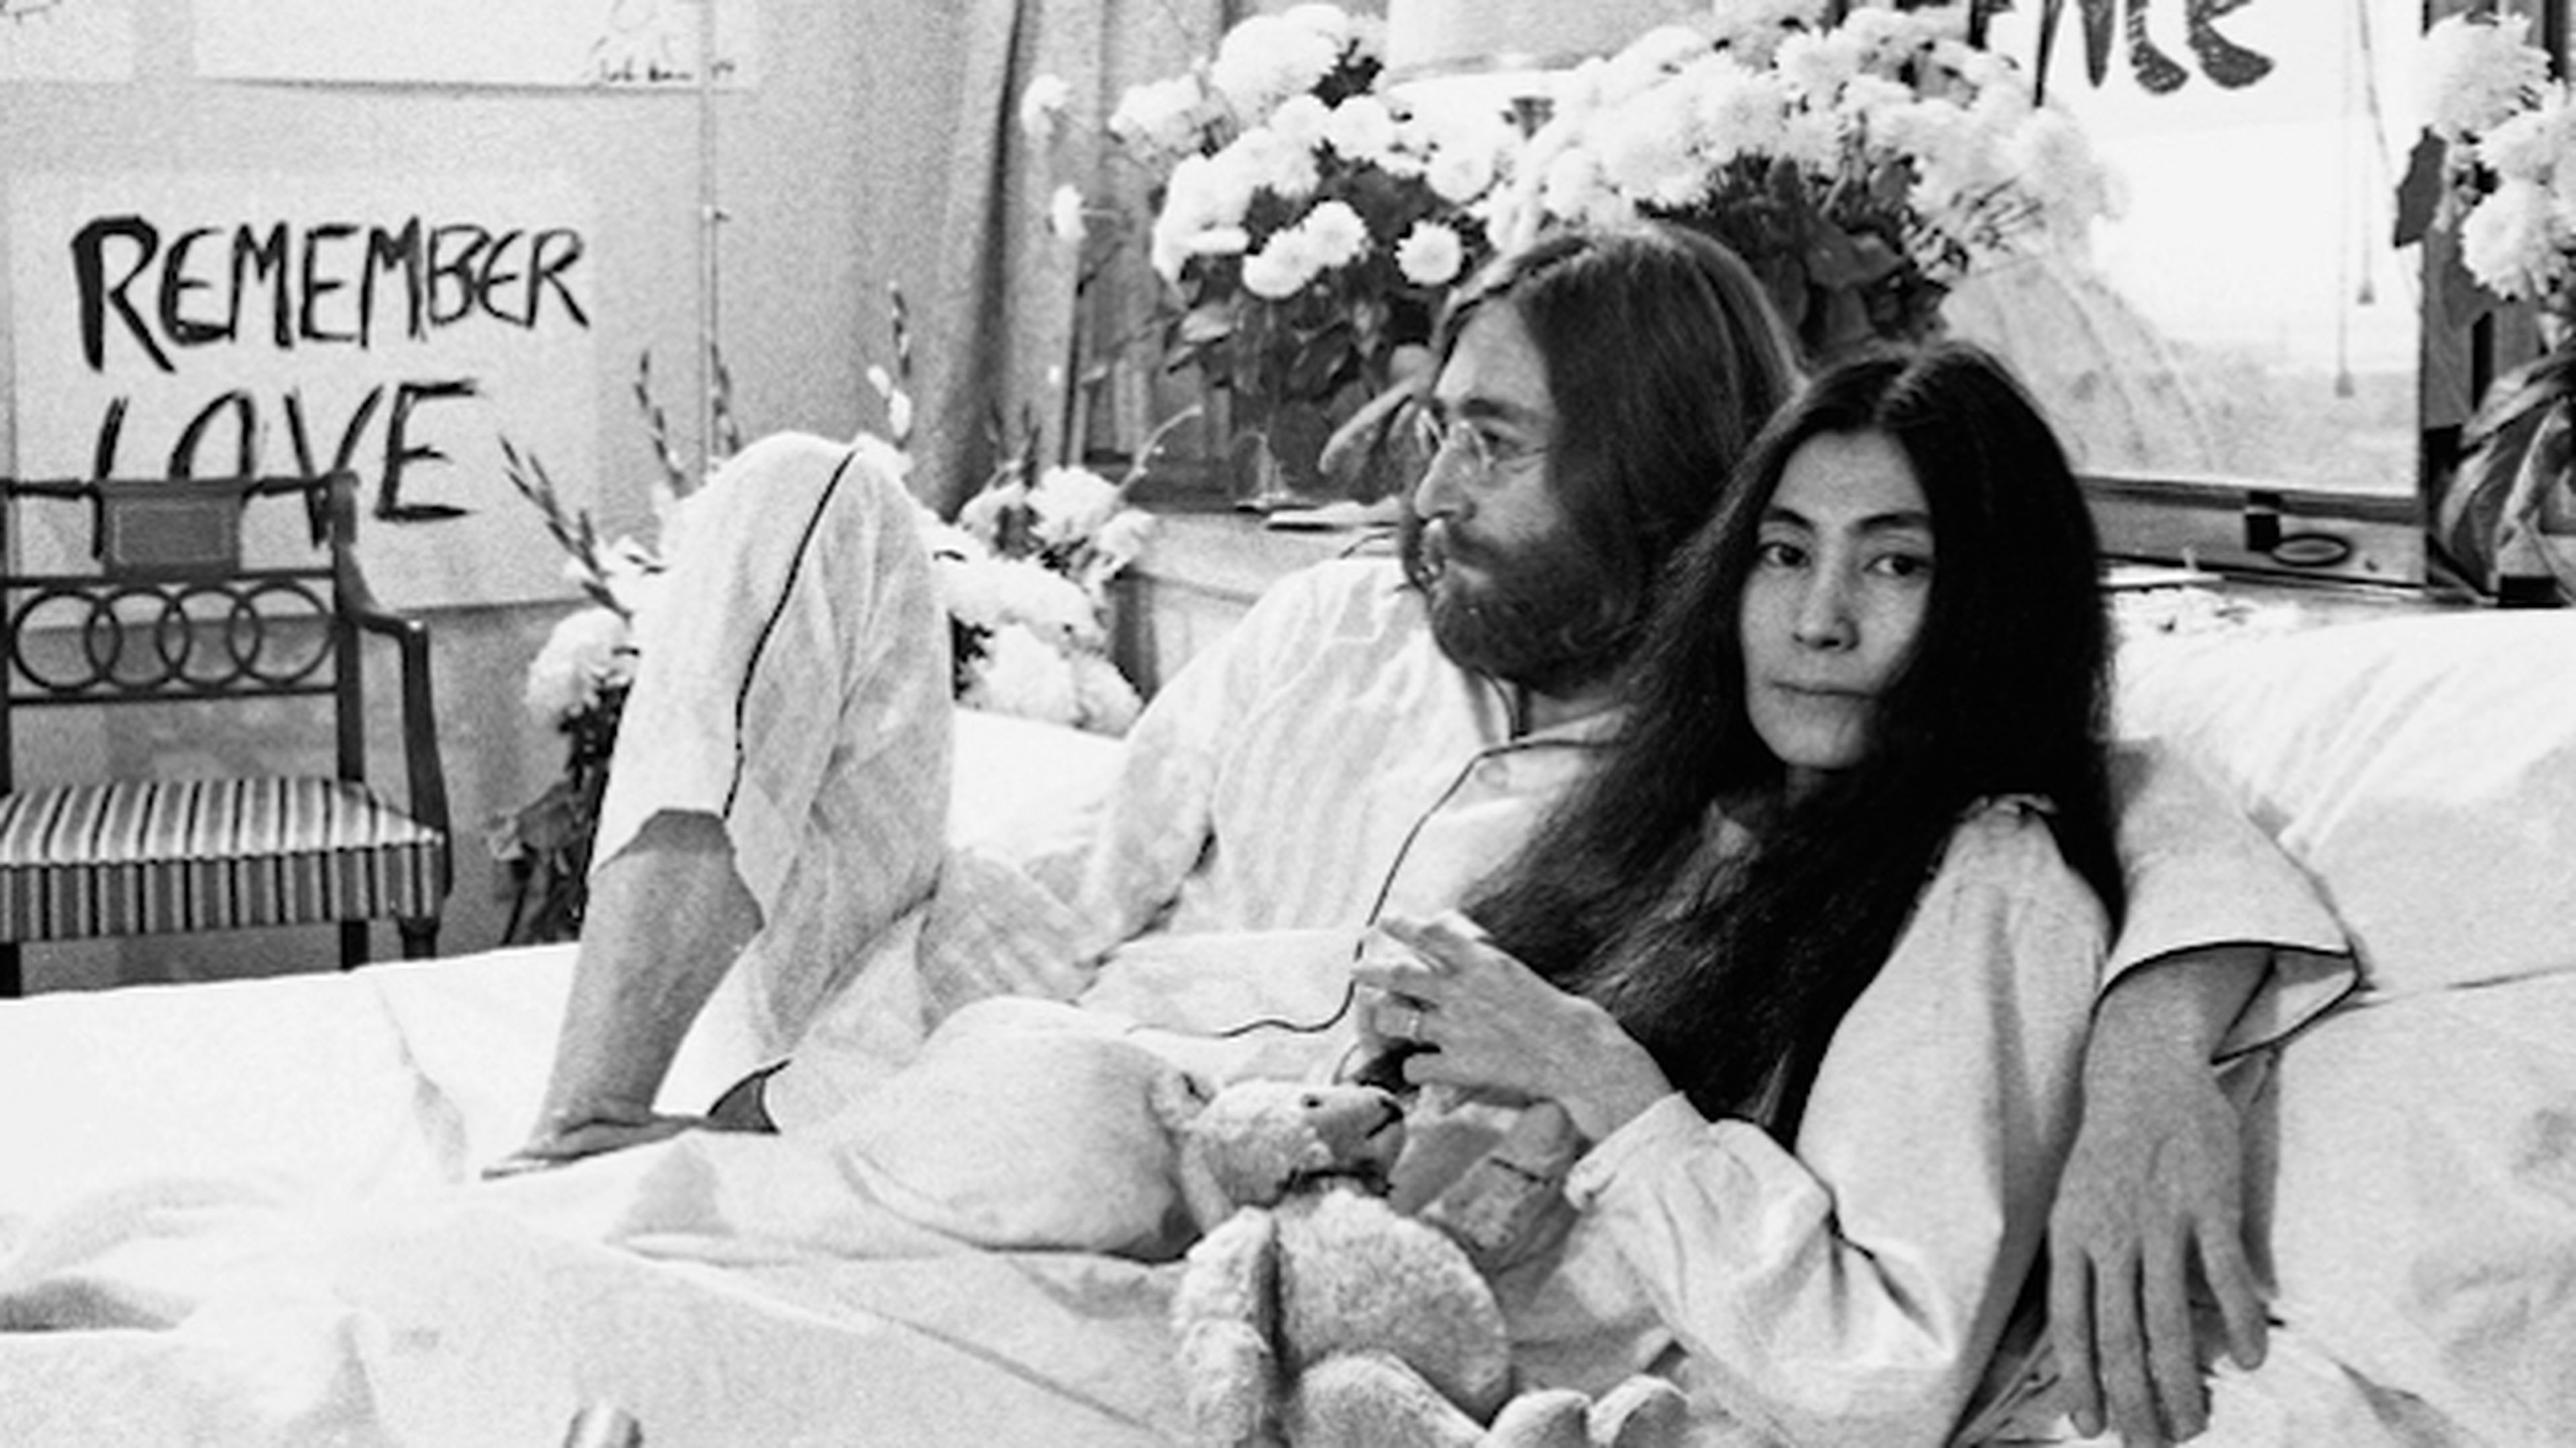 Una canción "Woman" regalo de Lenon a Yoko Ono